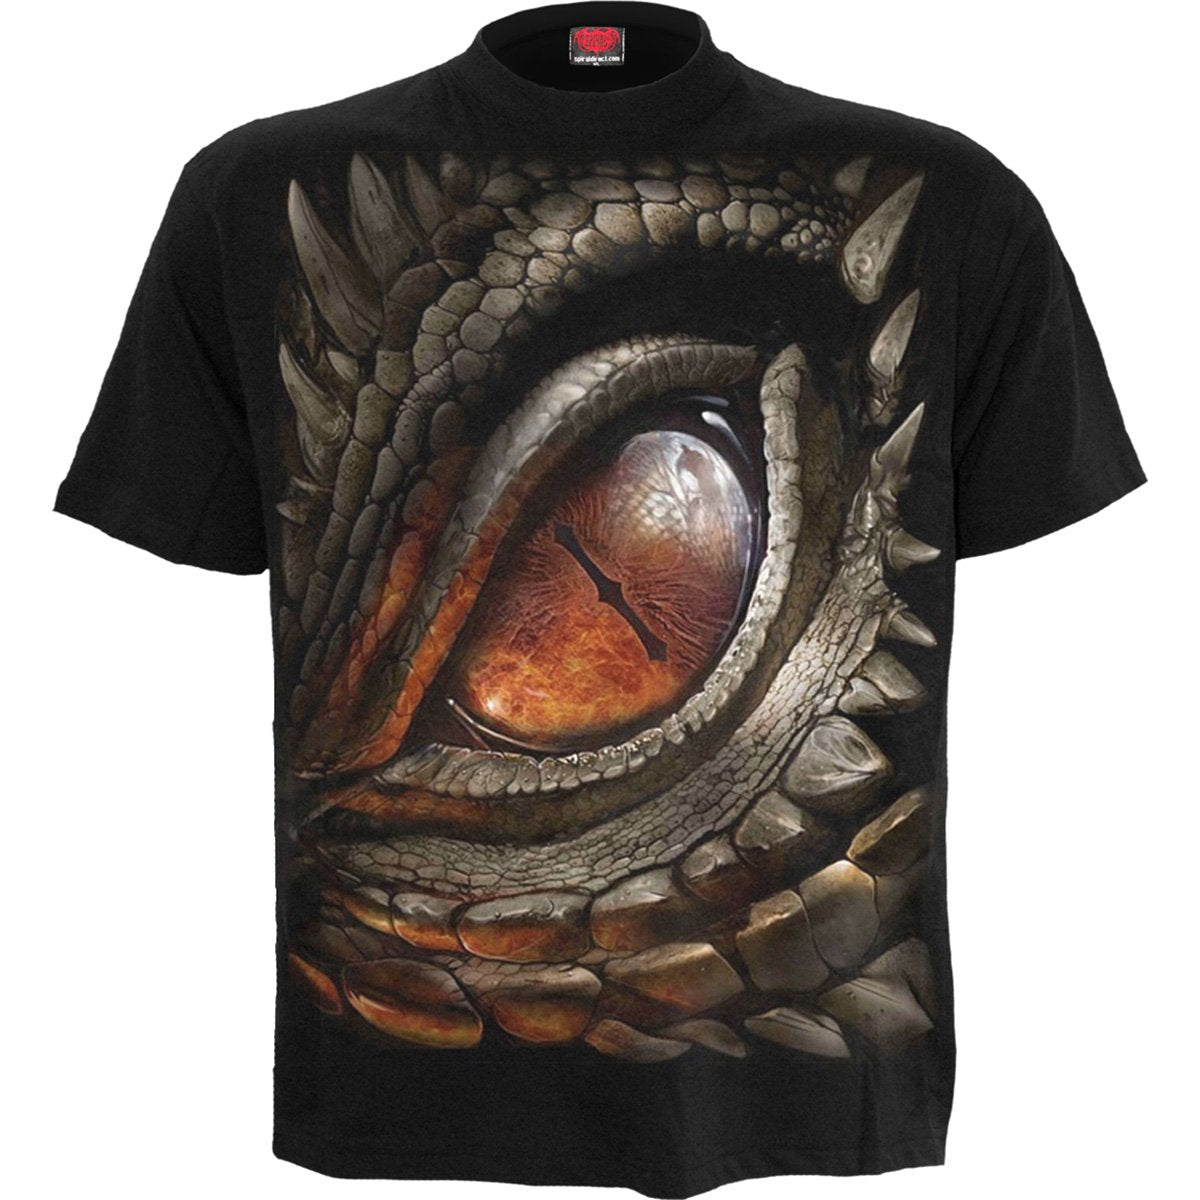 DRAGON EYE - T-Shirt Black - Spiral USA